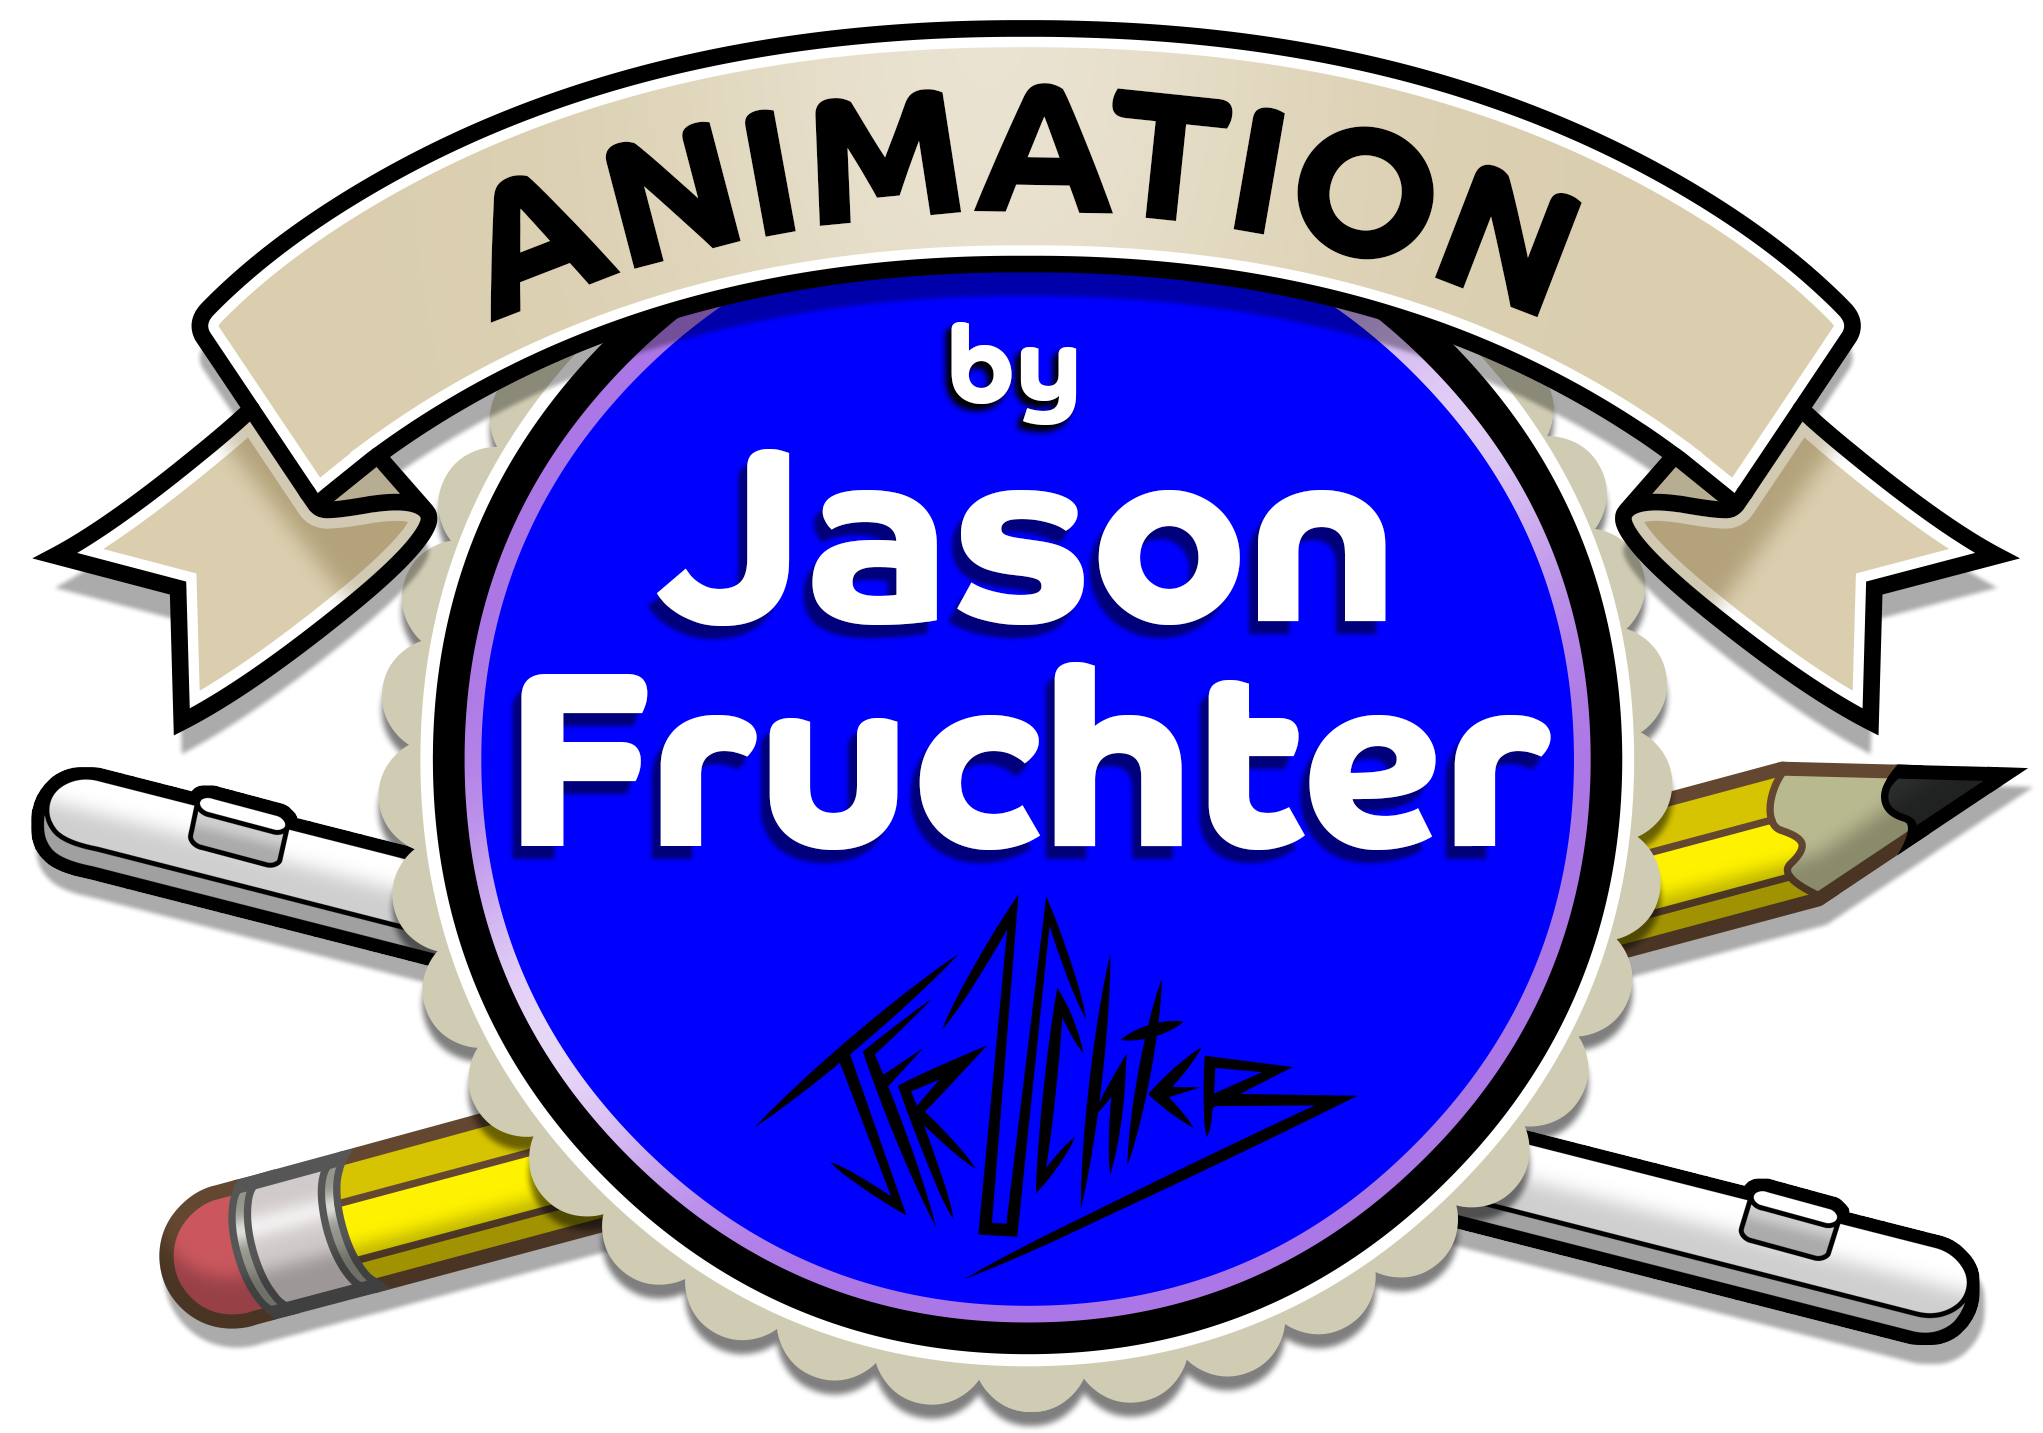 Jason Fruchter